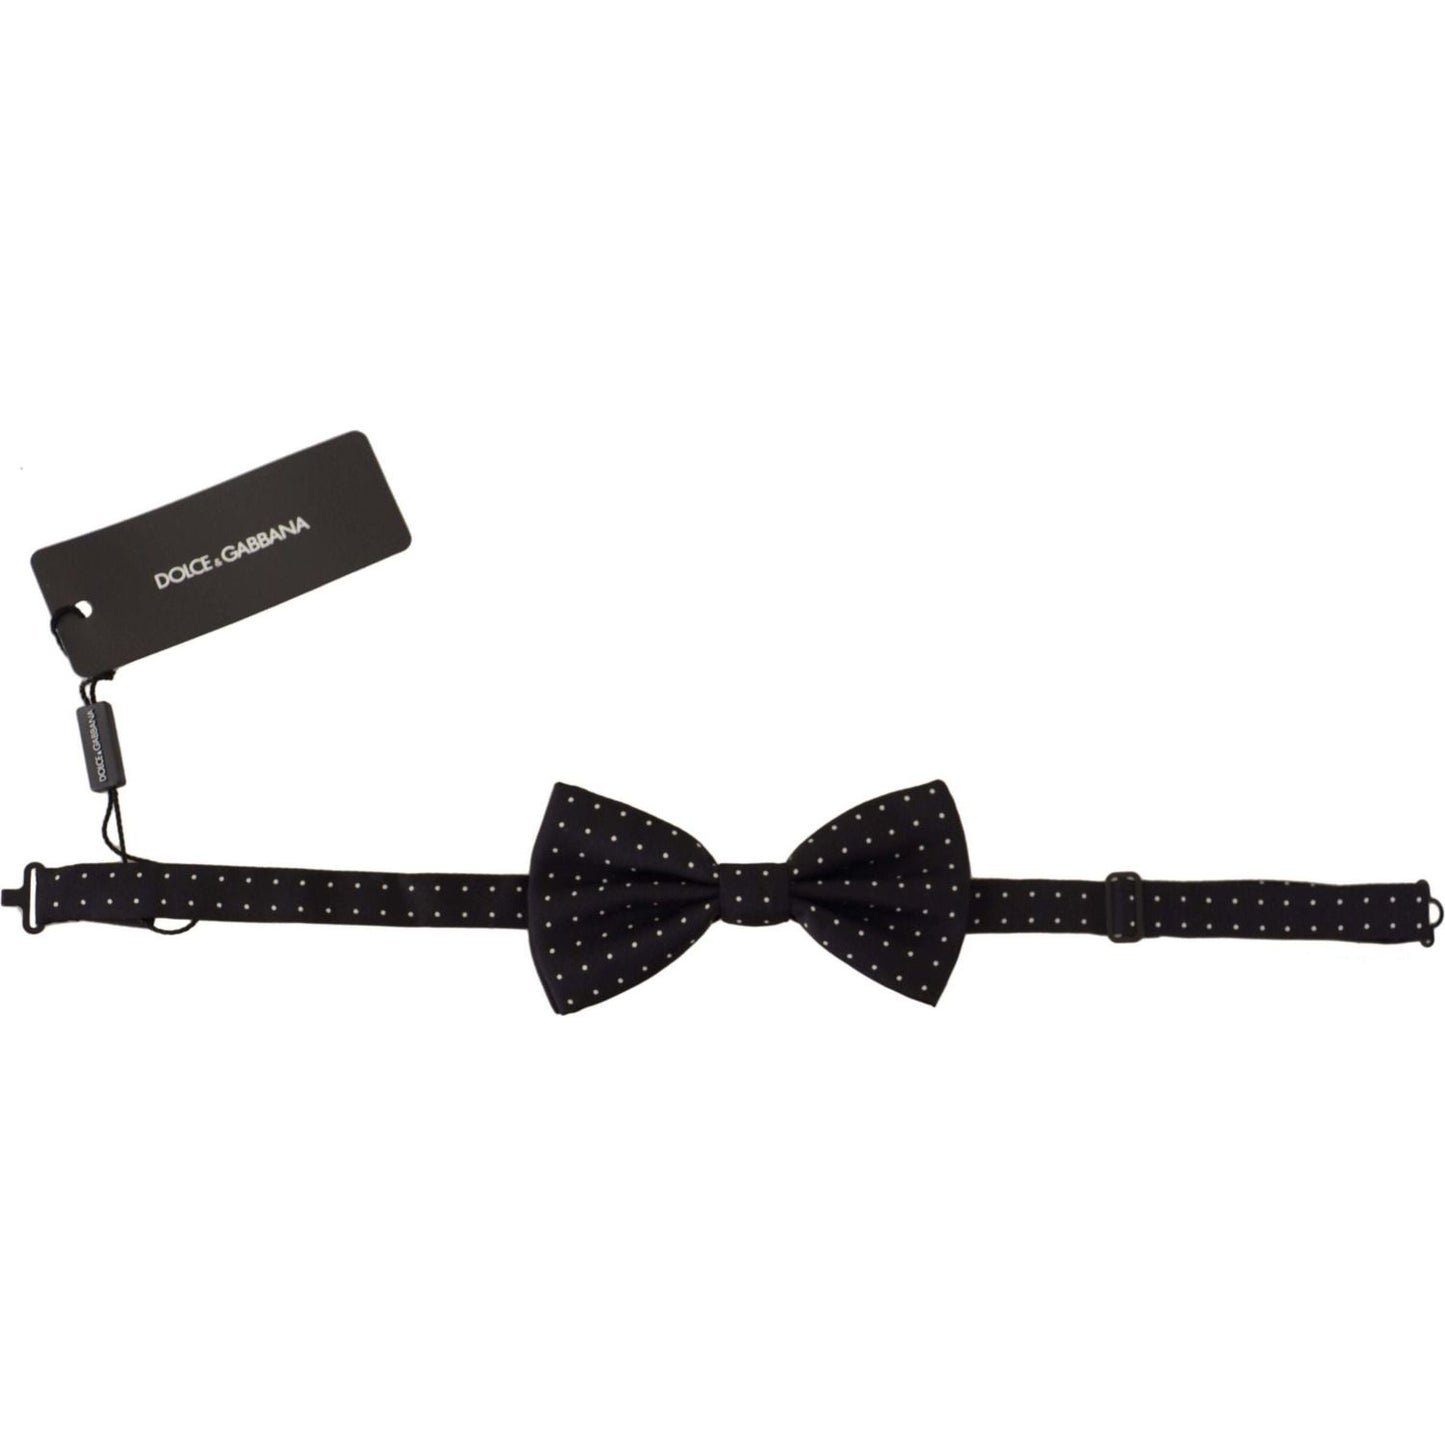 Elegant Black Polka Dot Silk Bow Tie